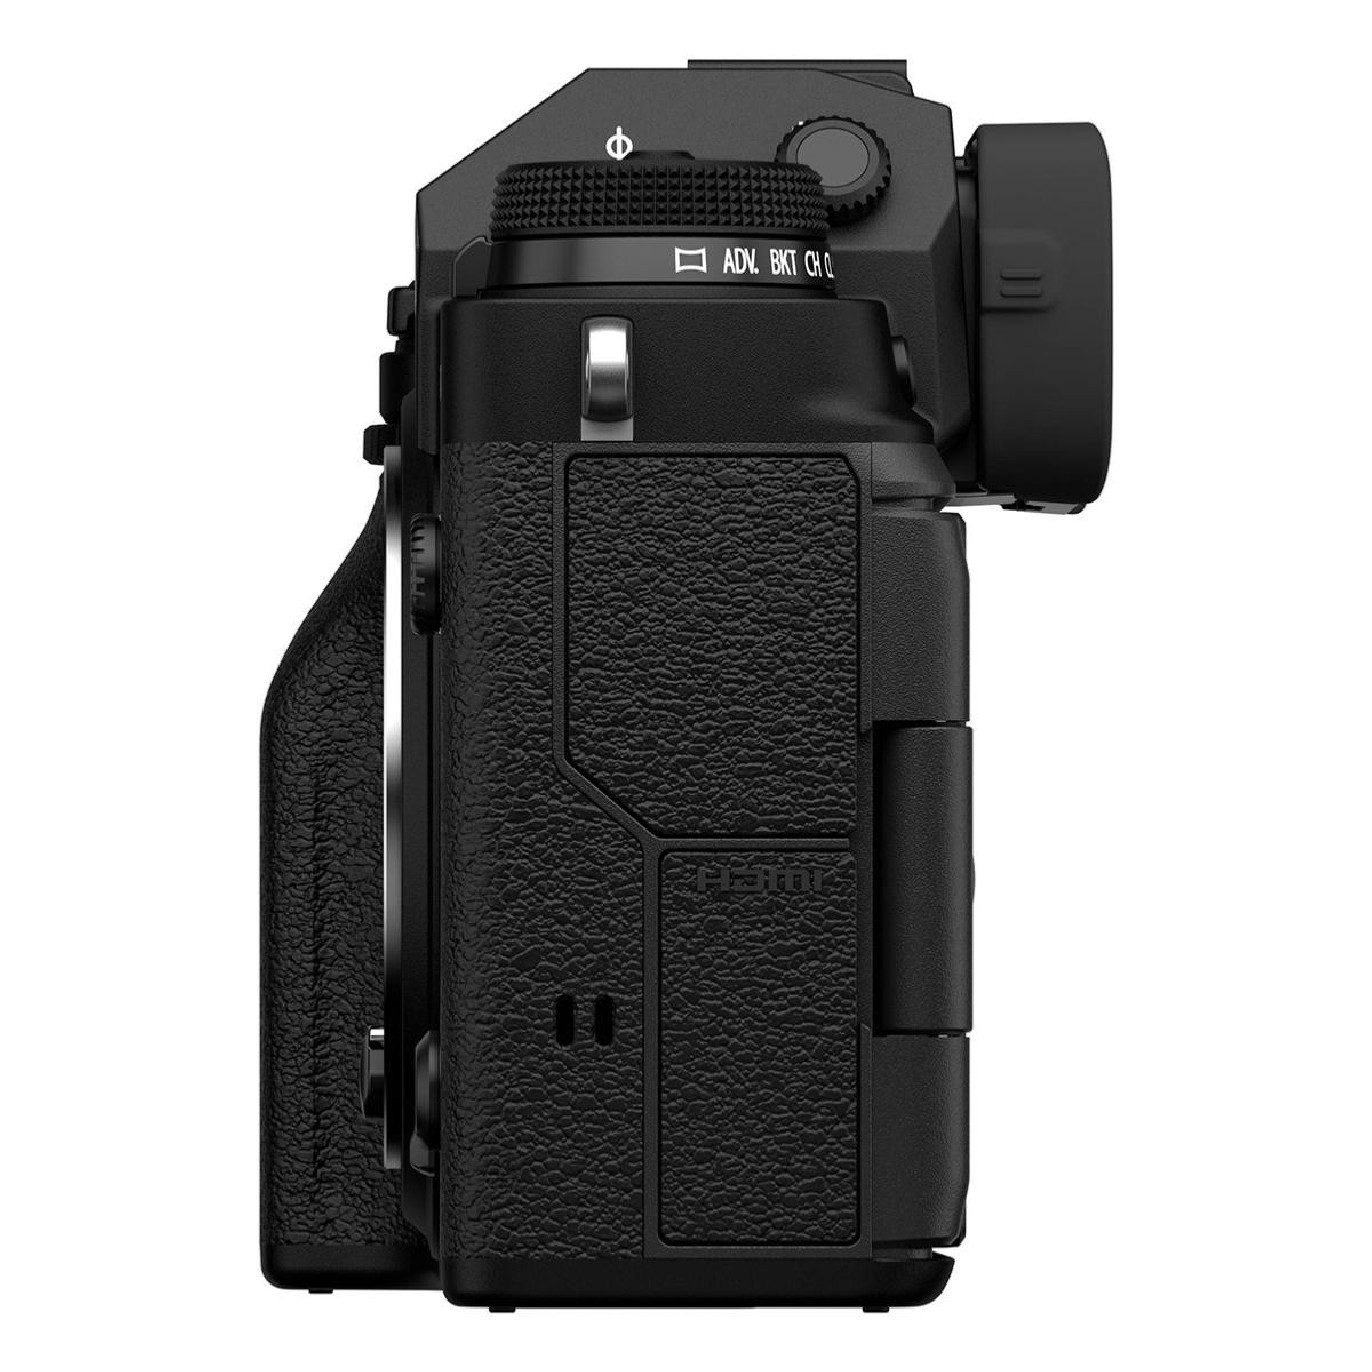 Fujifilm X-T4 Noir + Objectif XF 18-55mm